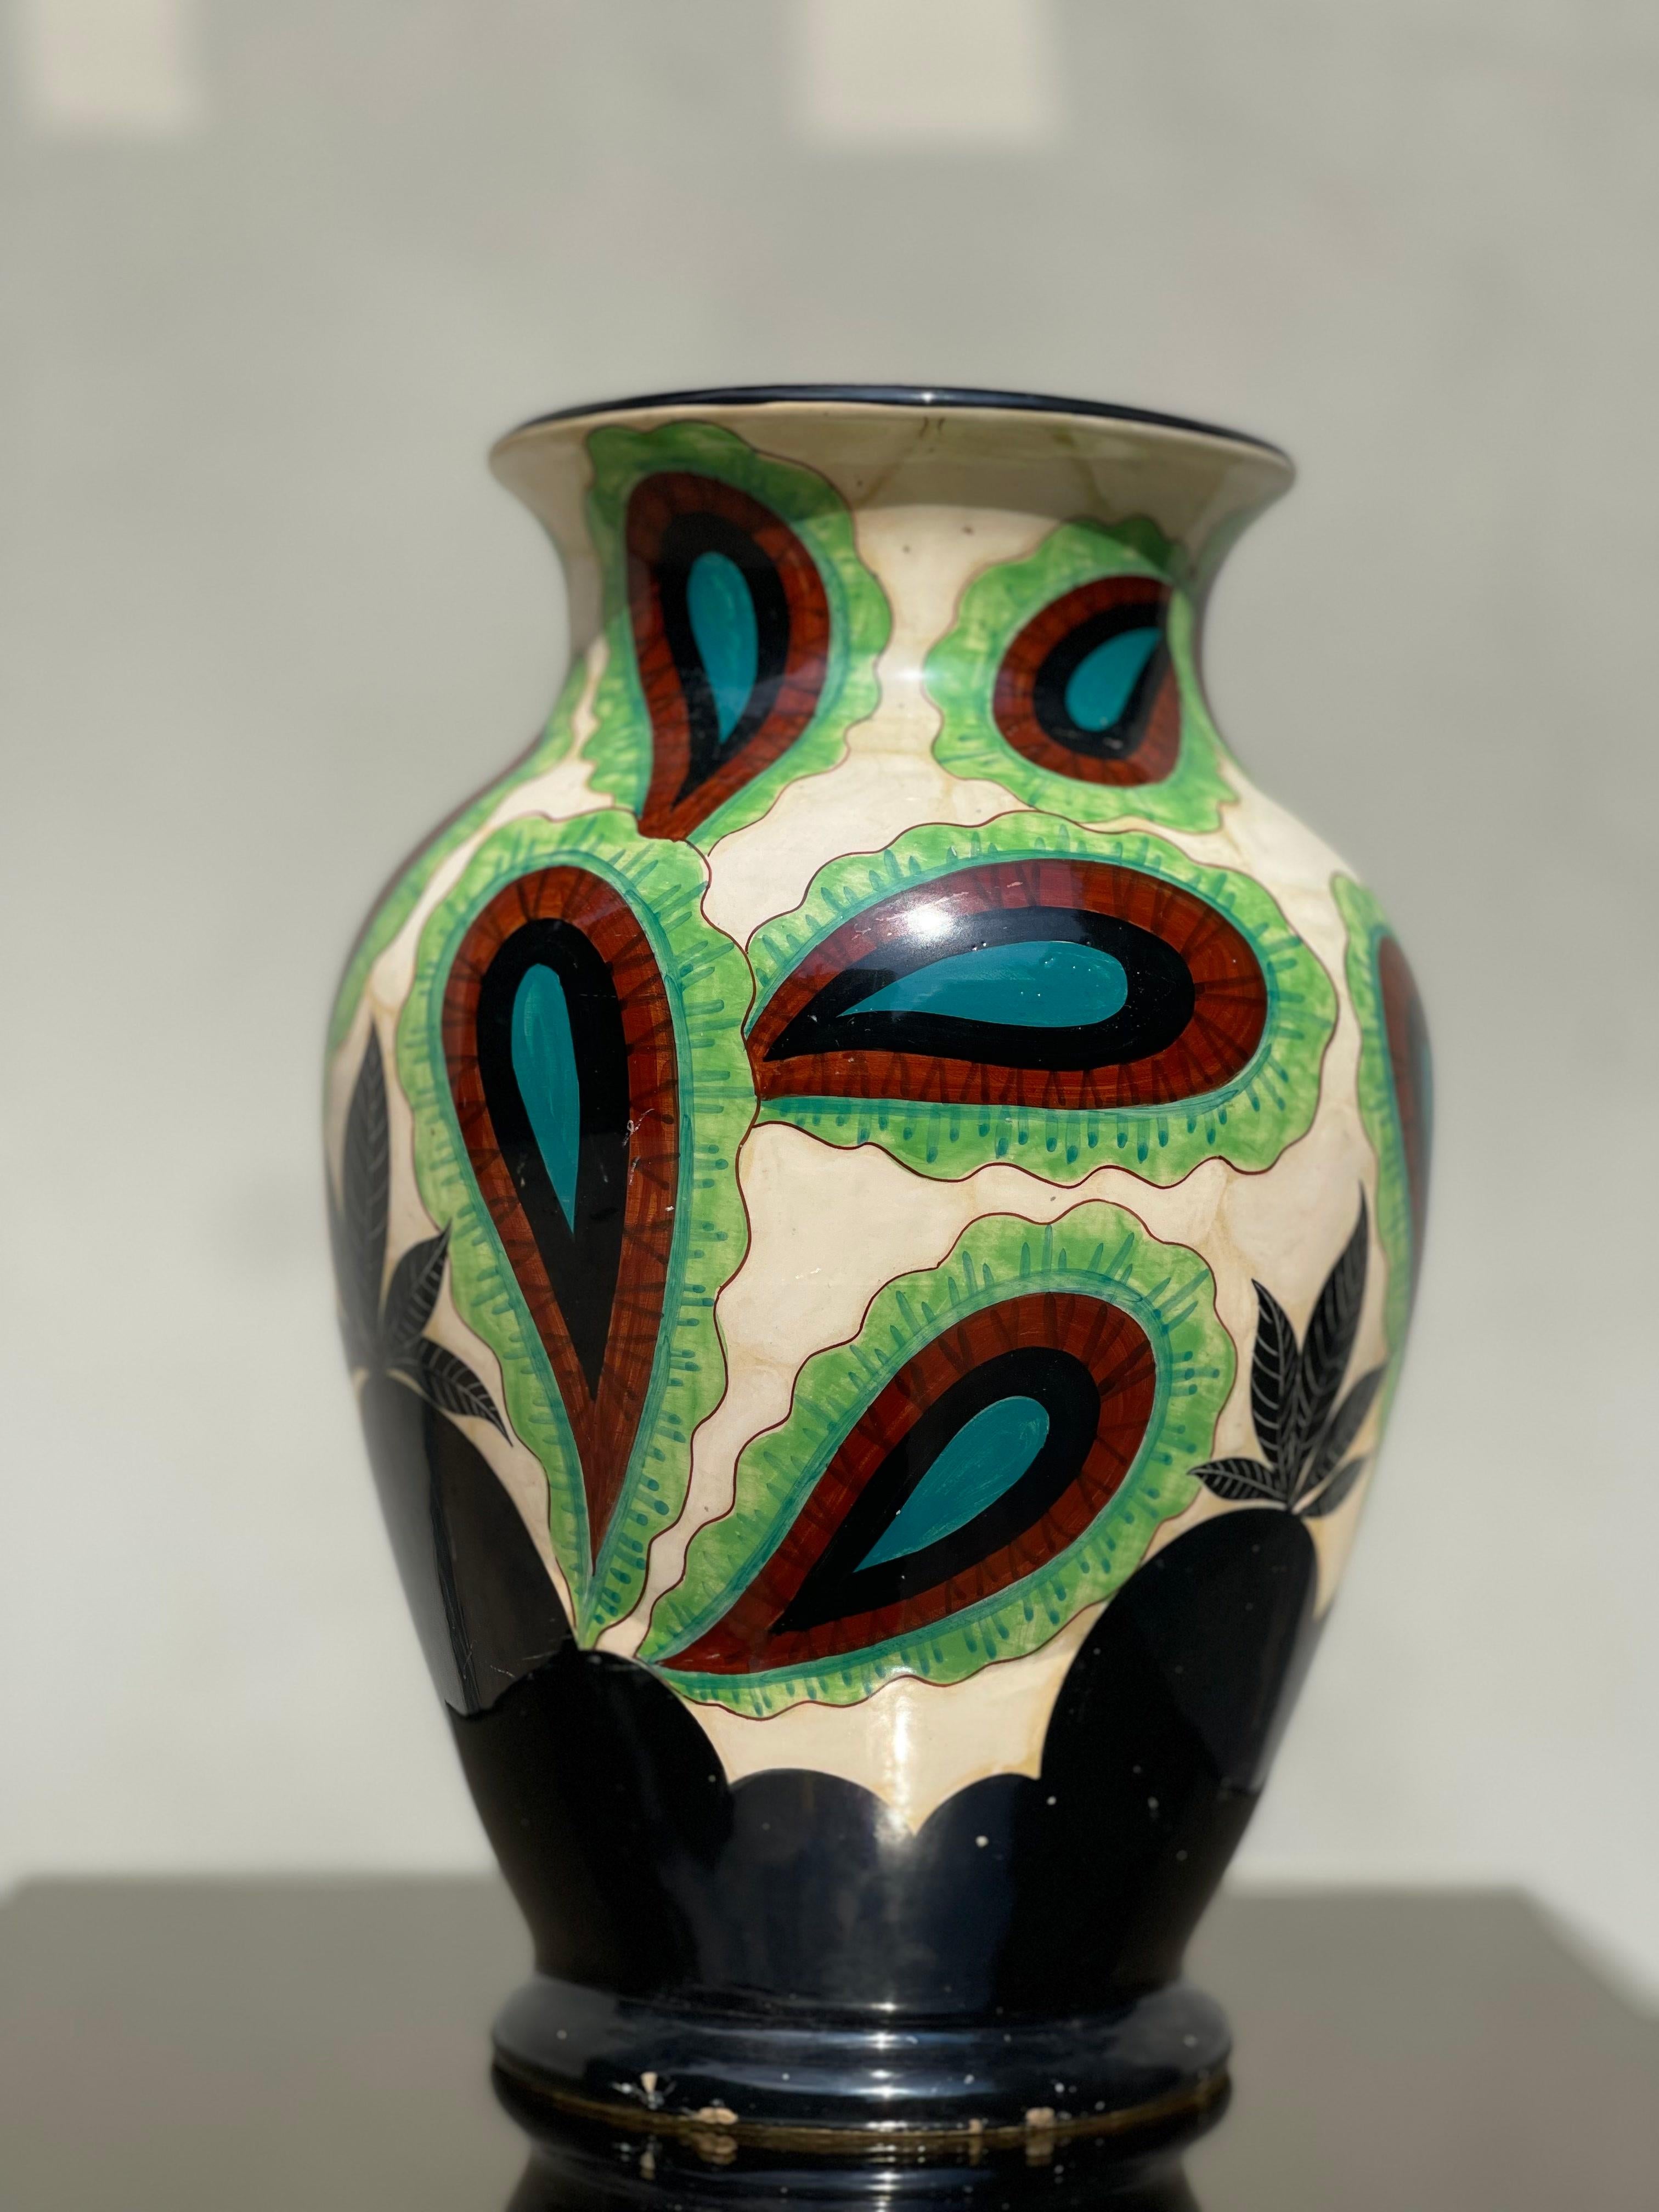 the original pottery albisola